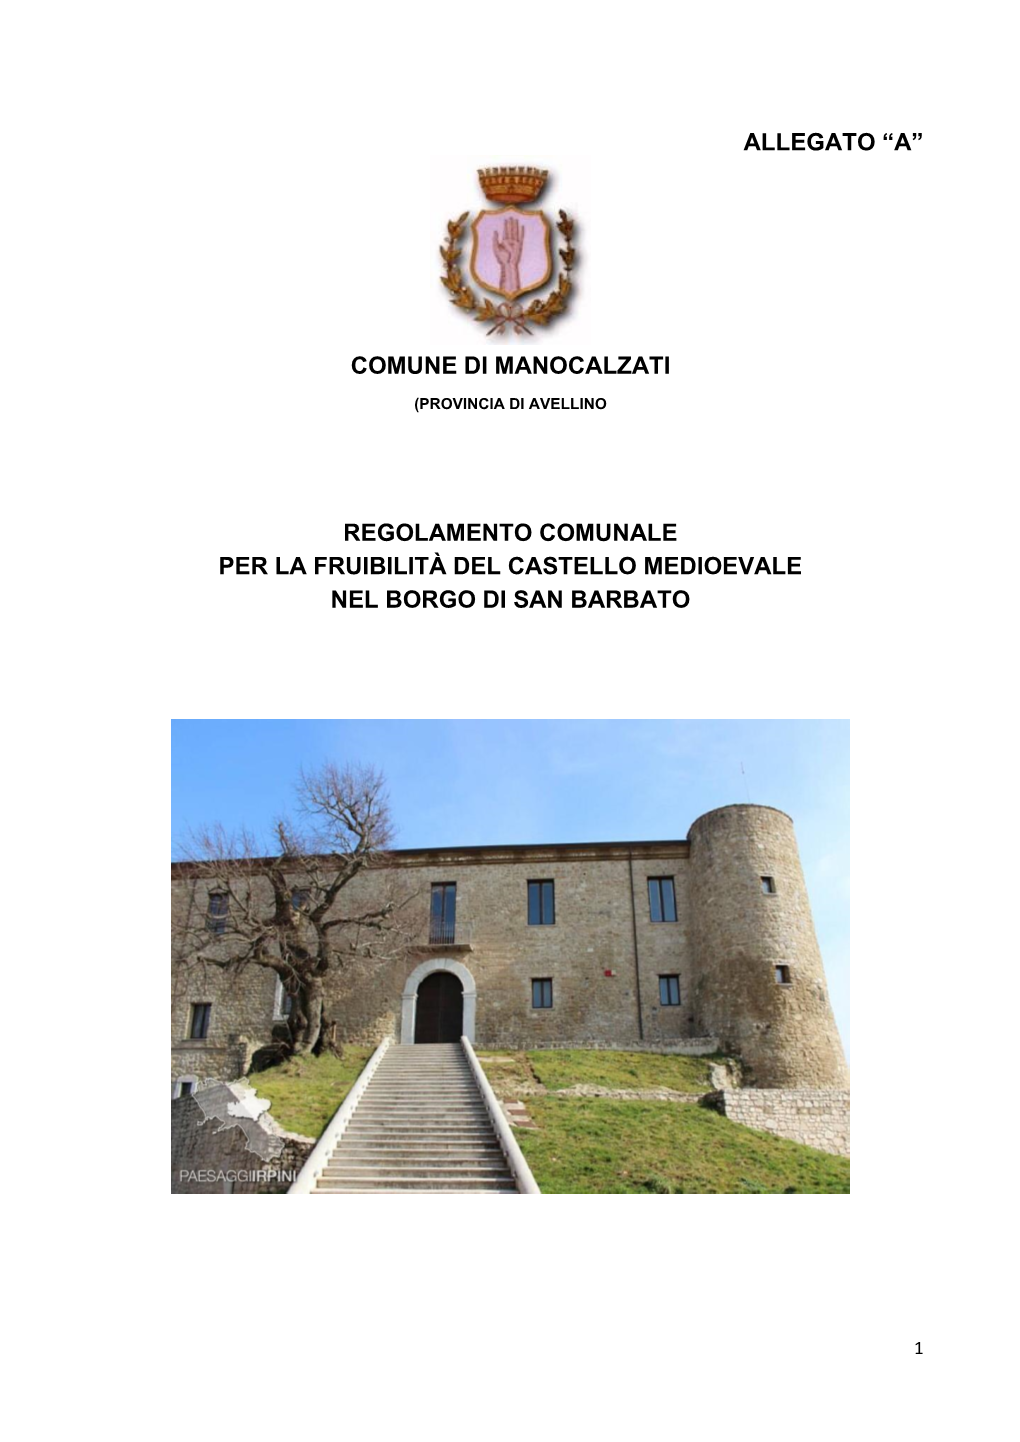 Allegato “A” Comune Di Manocalzati Regolamento Comunale Per La Fruibilità Del Castello Medioevale Nel Borgo Di San Barbat